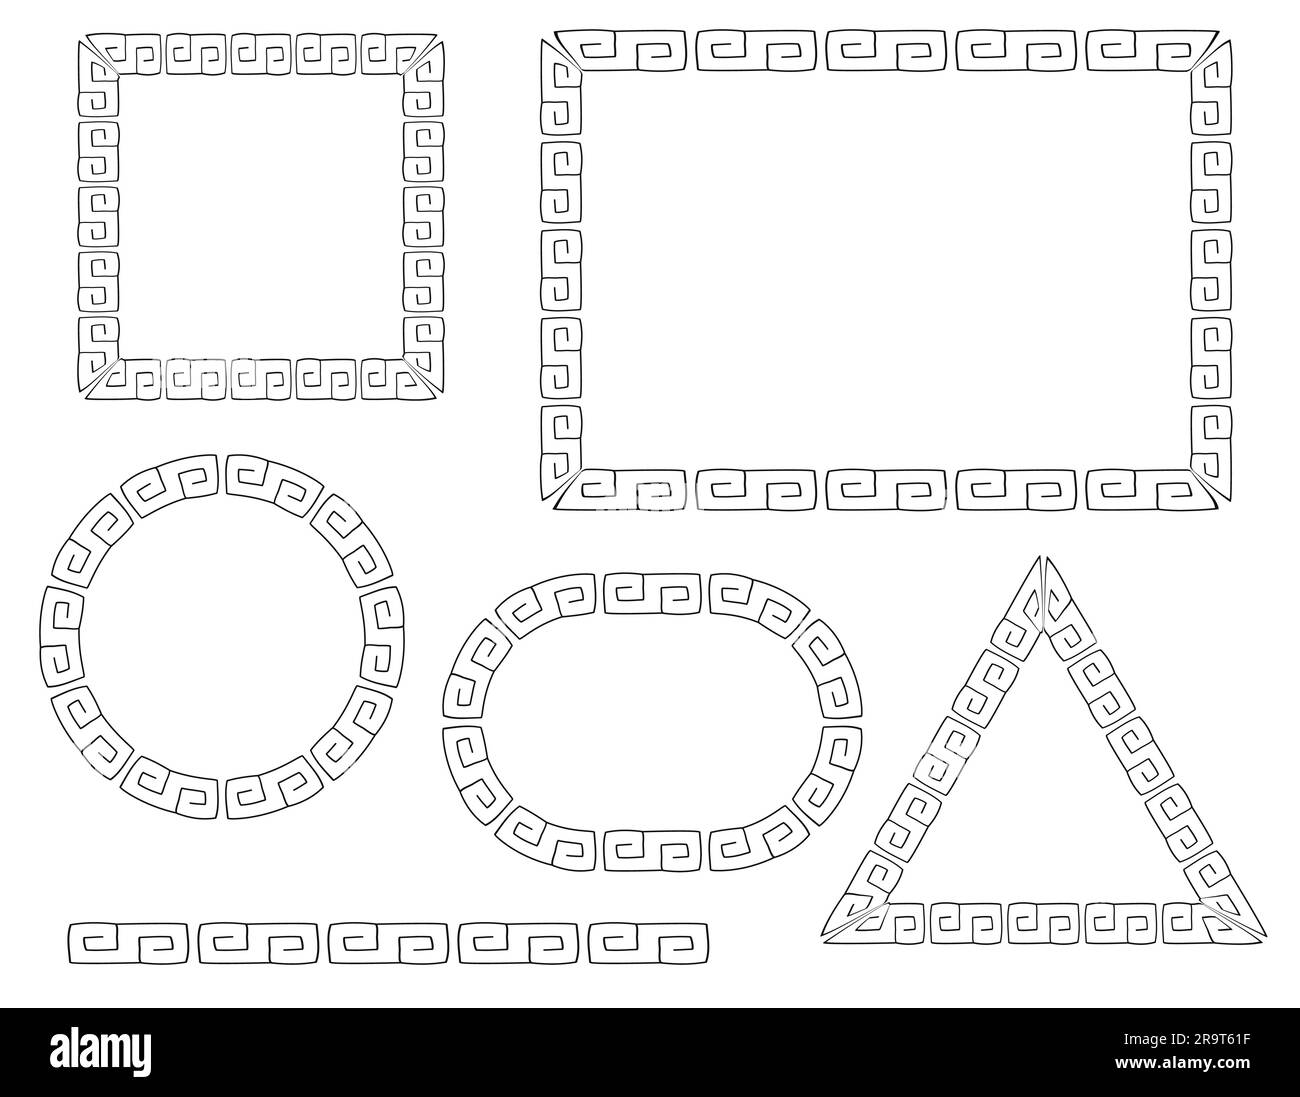 Dekorative Rahmen Schwarzes Muster Doodle Illustrations Designelemente Vektordarstellung isoliert auf weißem Hintergrund Stock Vektor